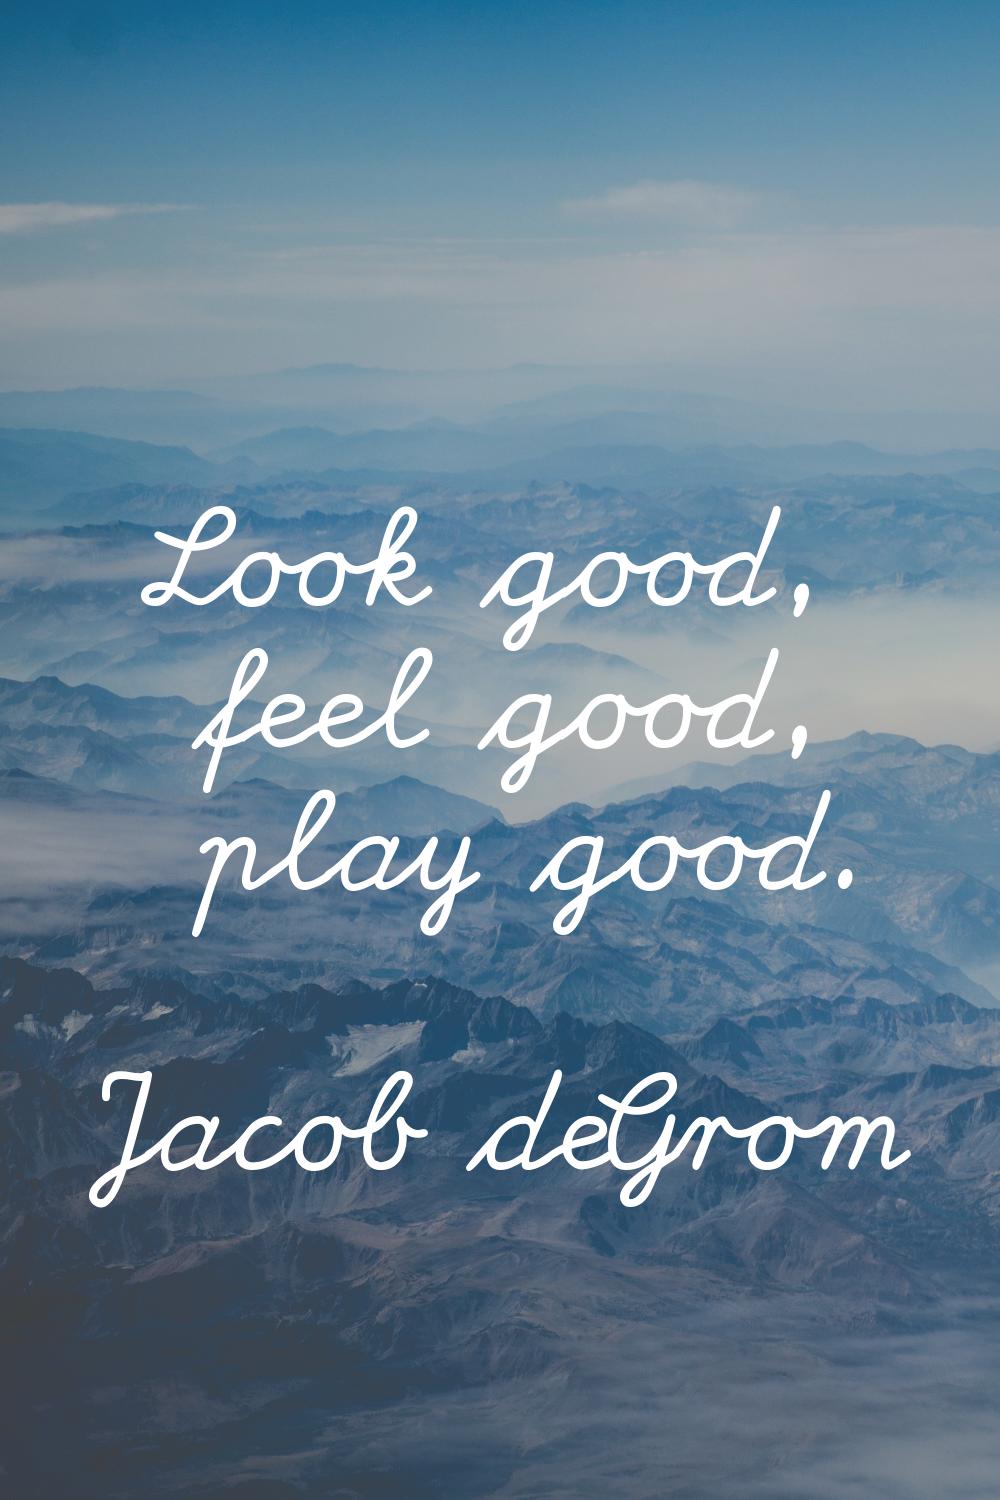 Look good, feel good, play good.